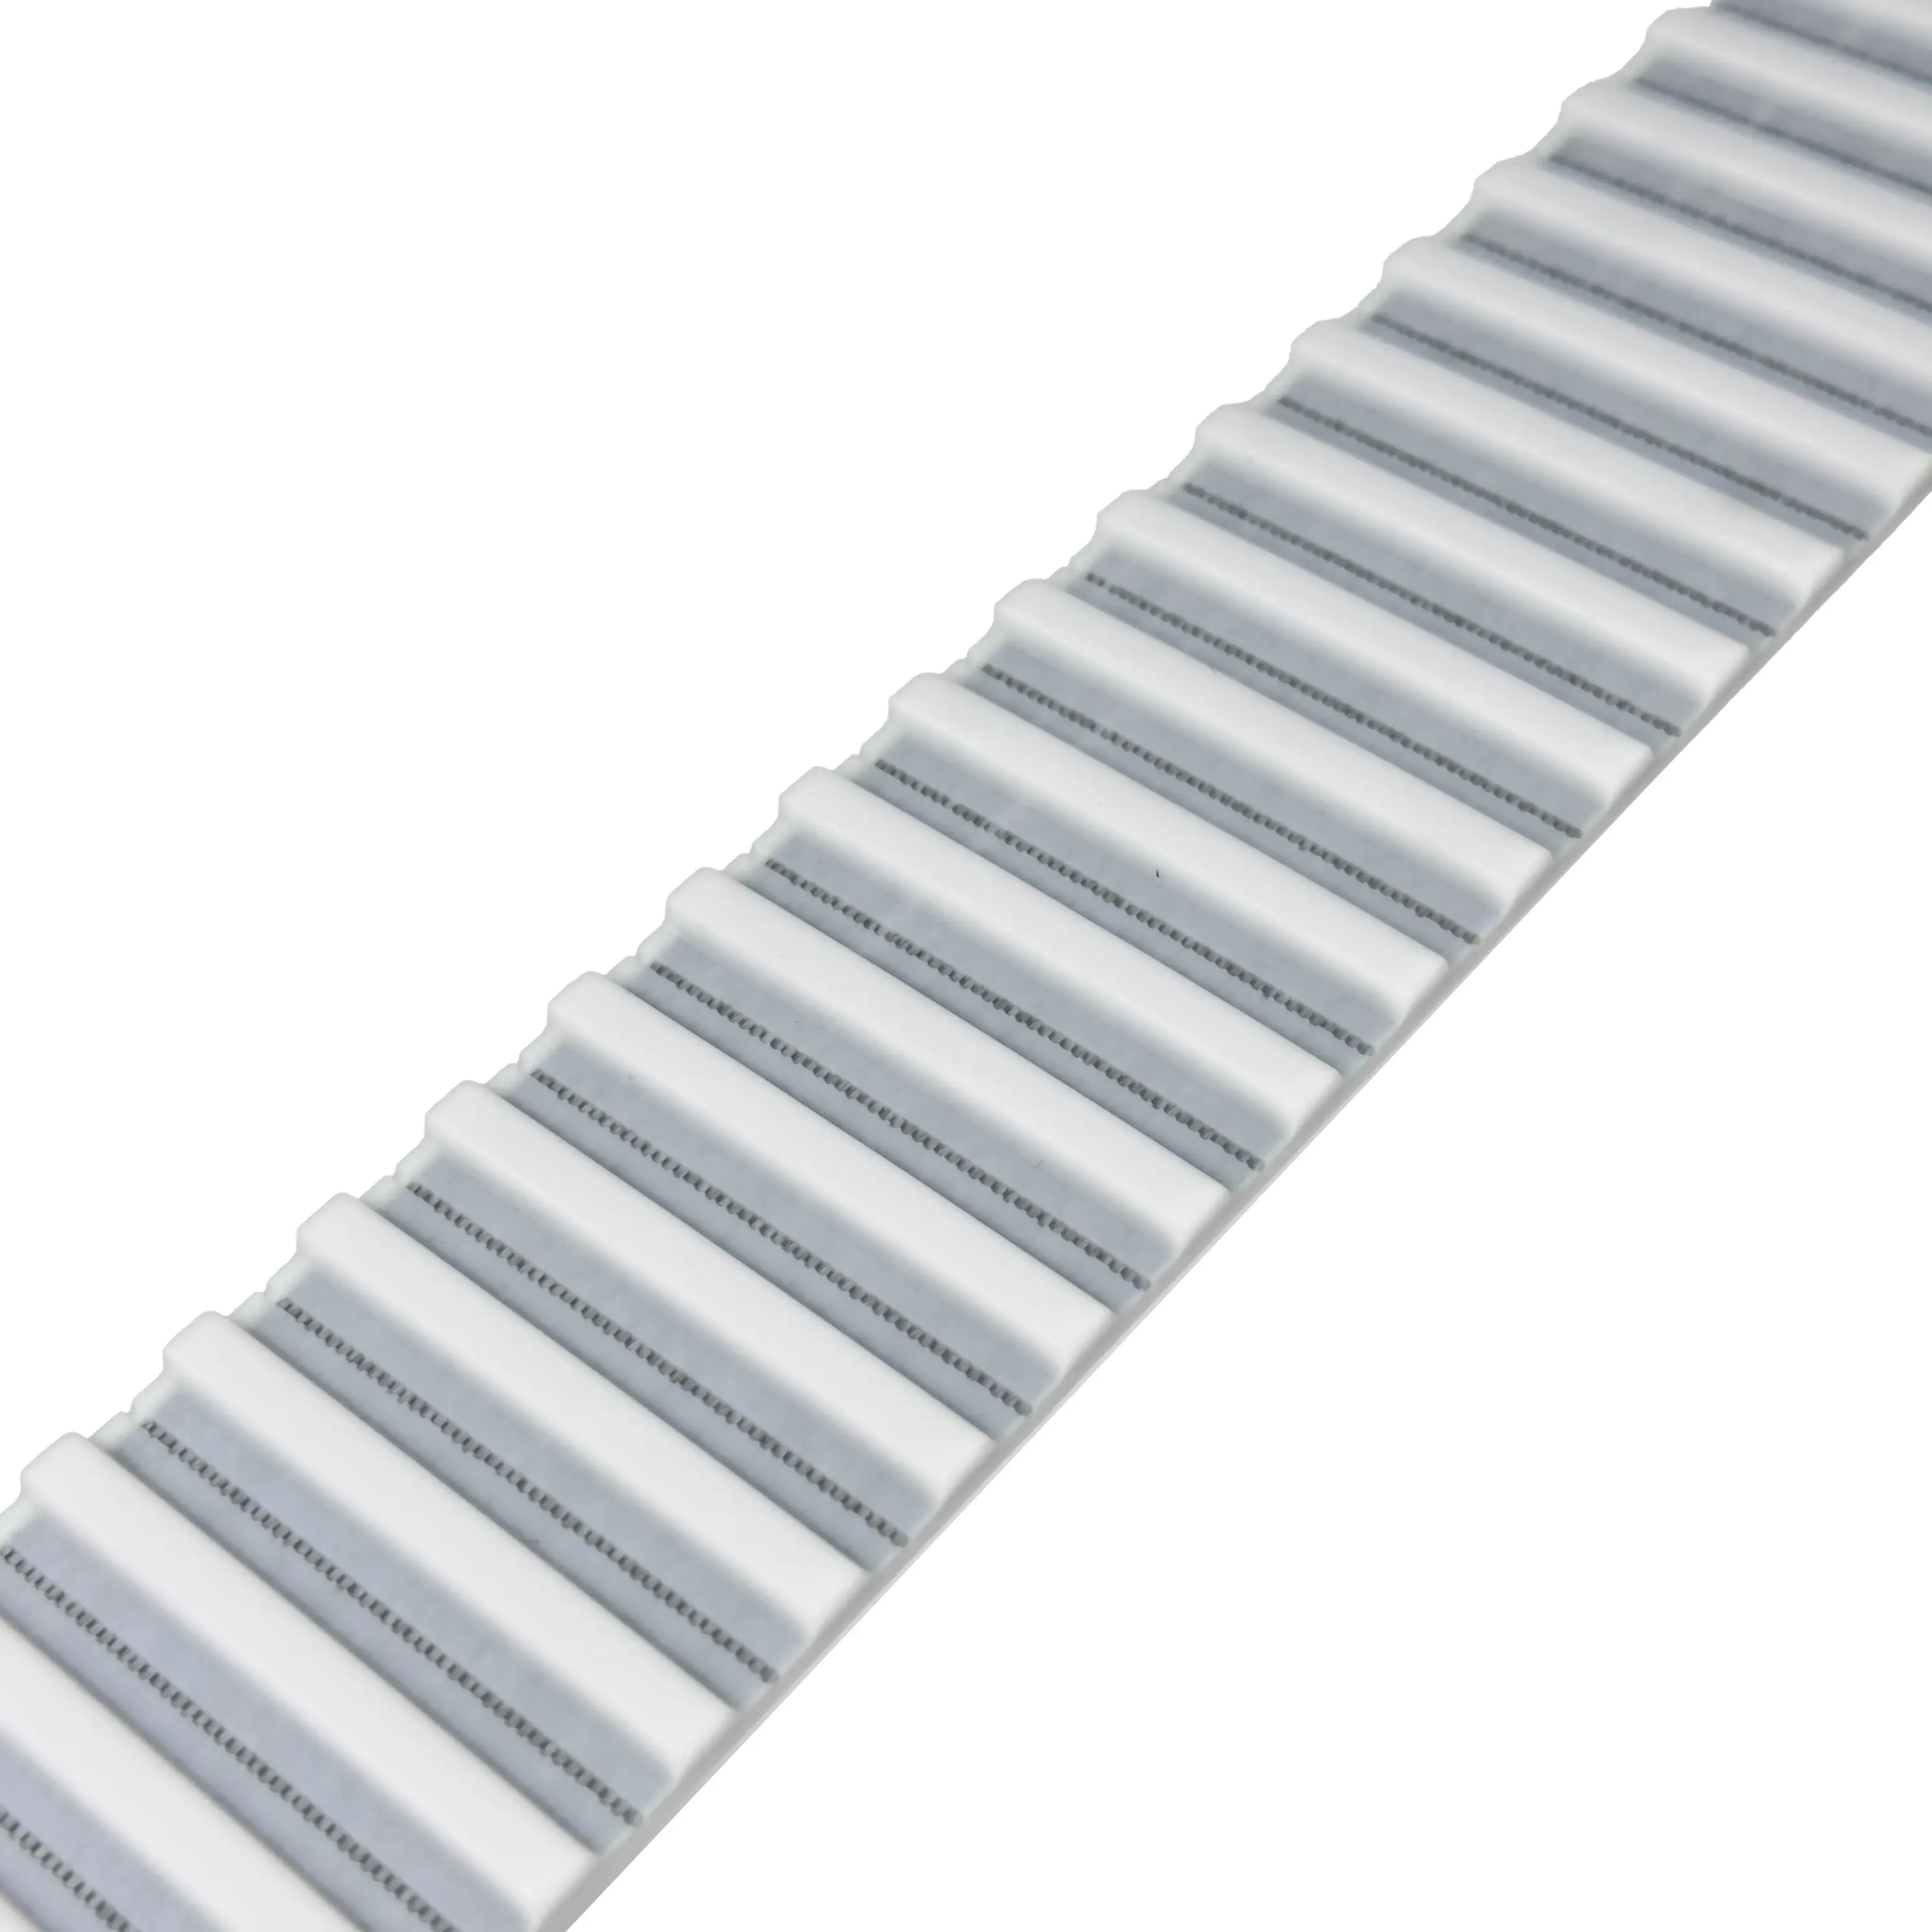 High quality polyurethane timing belt pu belts XL/L/H/XH/XXH/T5/T10 pu transmission belts